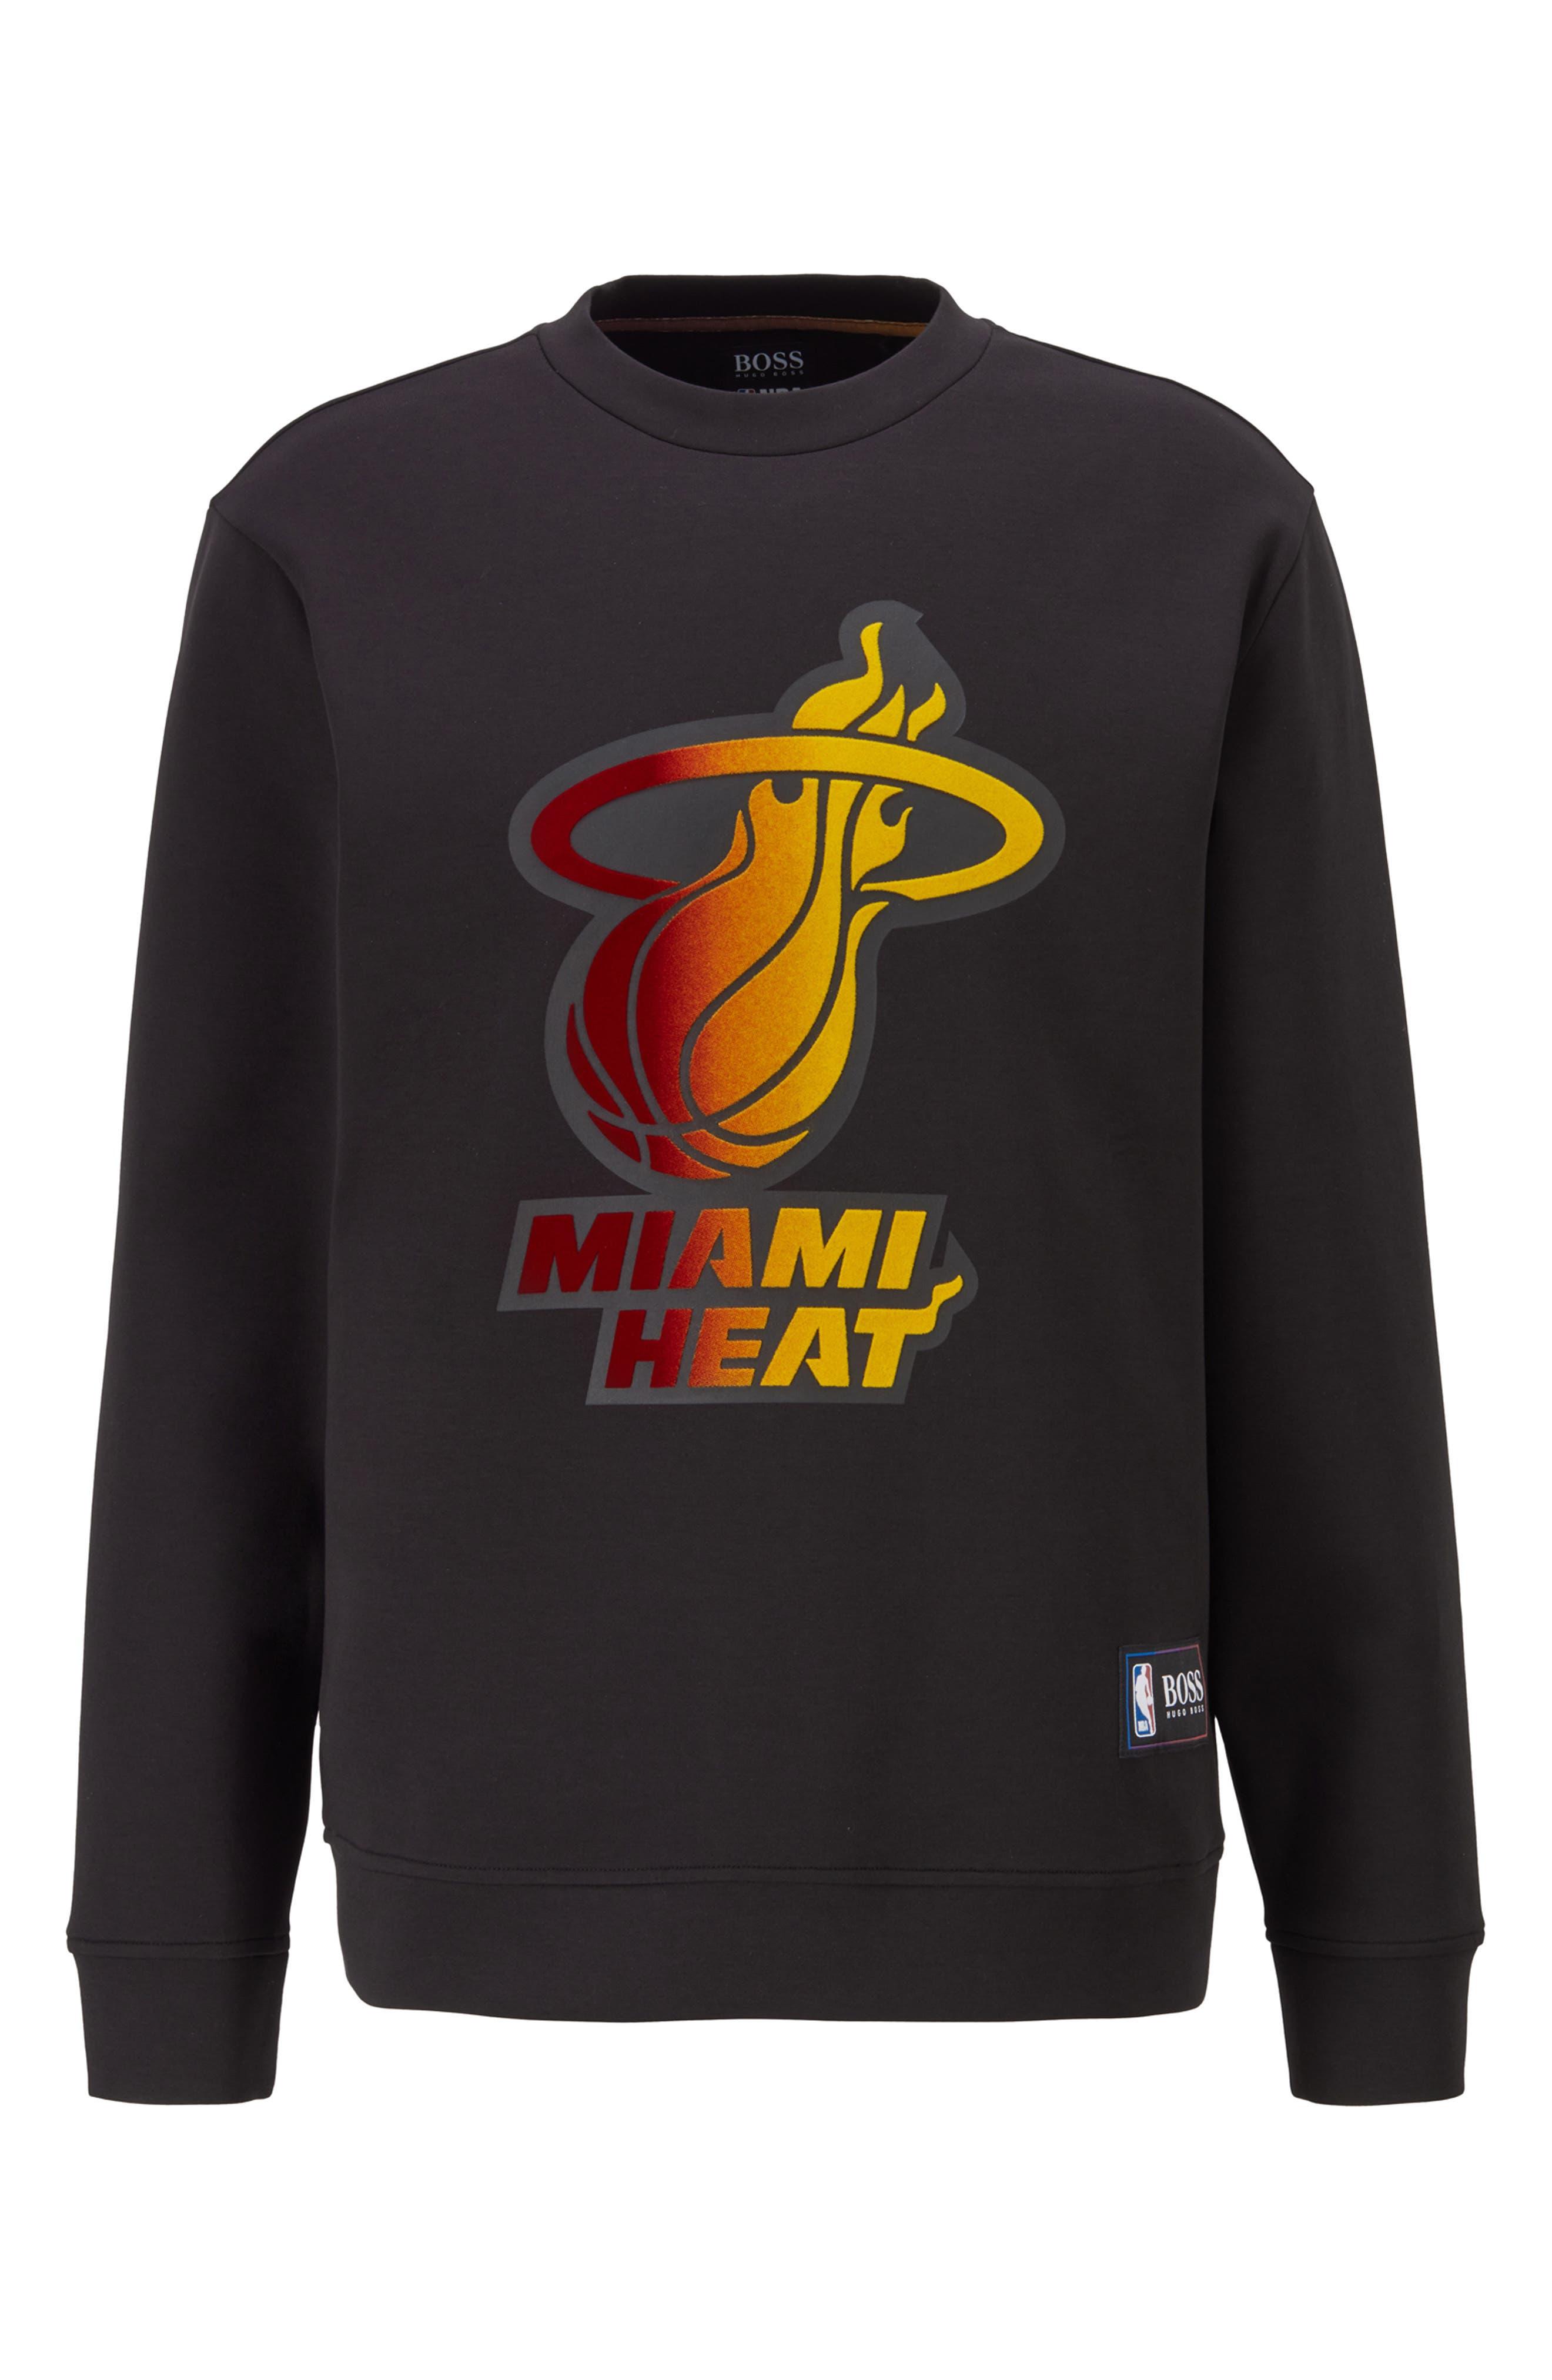 BOSS by HUGO BOSS X Nba Miami Heat Logo Sweatshirt in Black